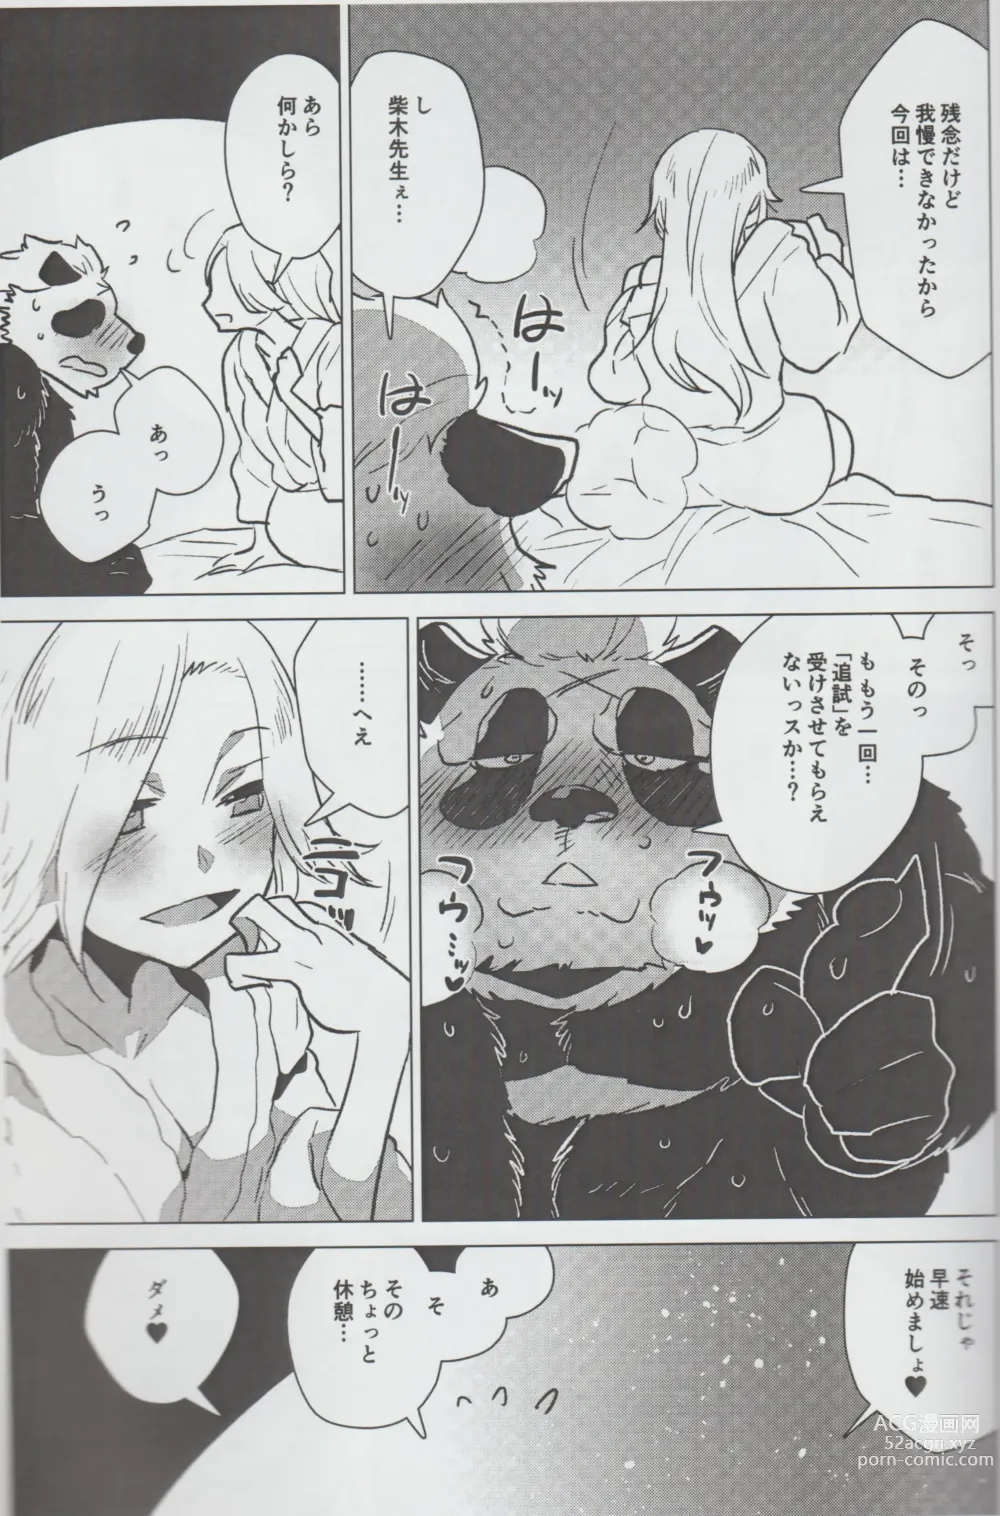 Page 16 of doujinshi Mihoshi Ginza Shopping Street Kaihoushi vol. 07